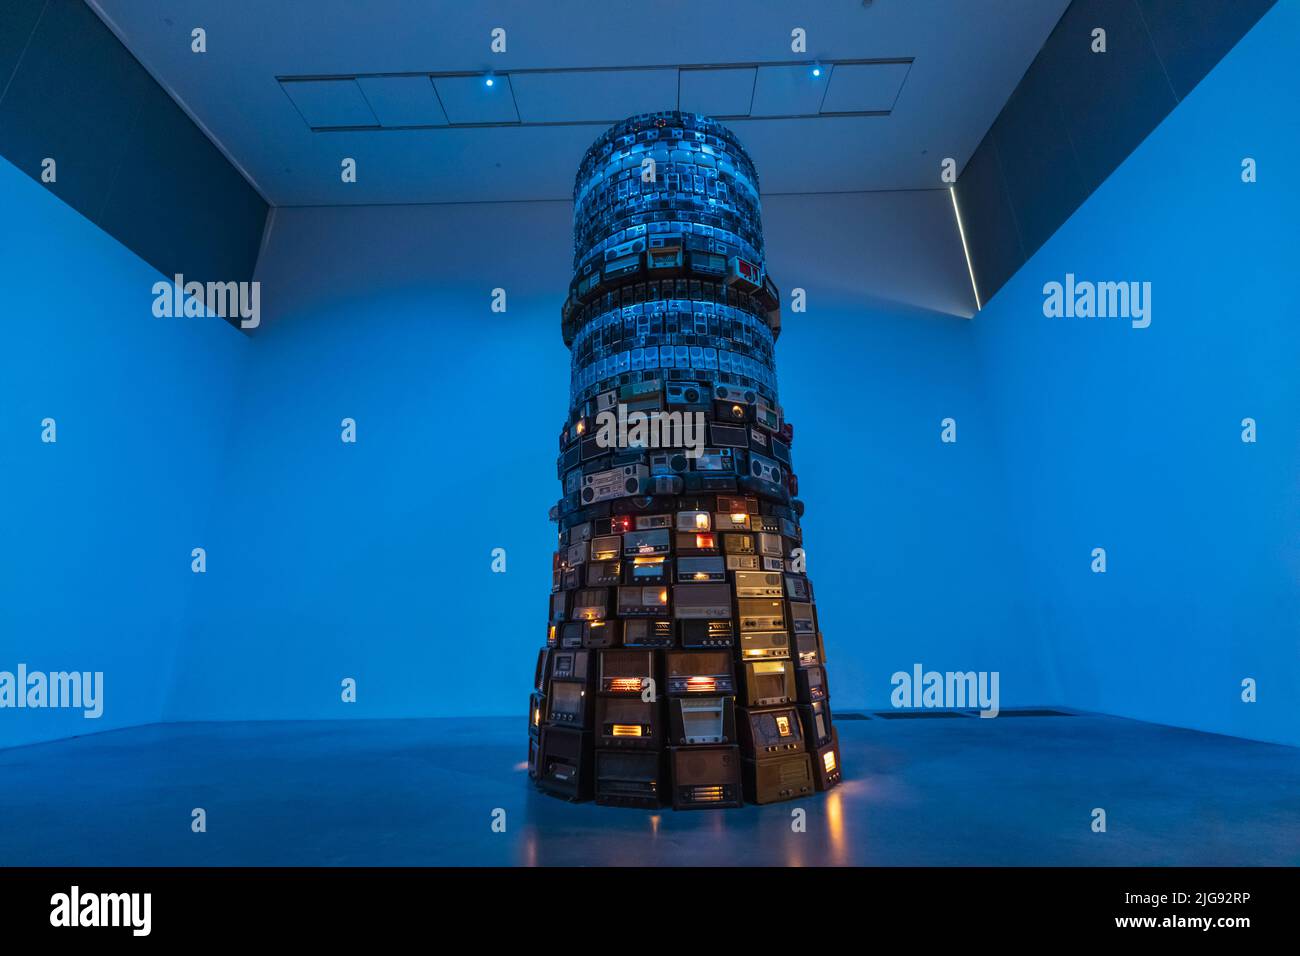 Angleterre, Londres, Southwark, Bankside, Tate Modern Art Gallery, Sculpture analogique de l'artiste conceptuel brésilien Cildo Meireles intitulé 'Babel' en 2001 Banque D'Images